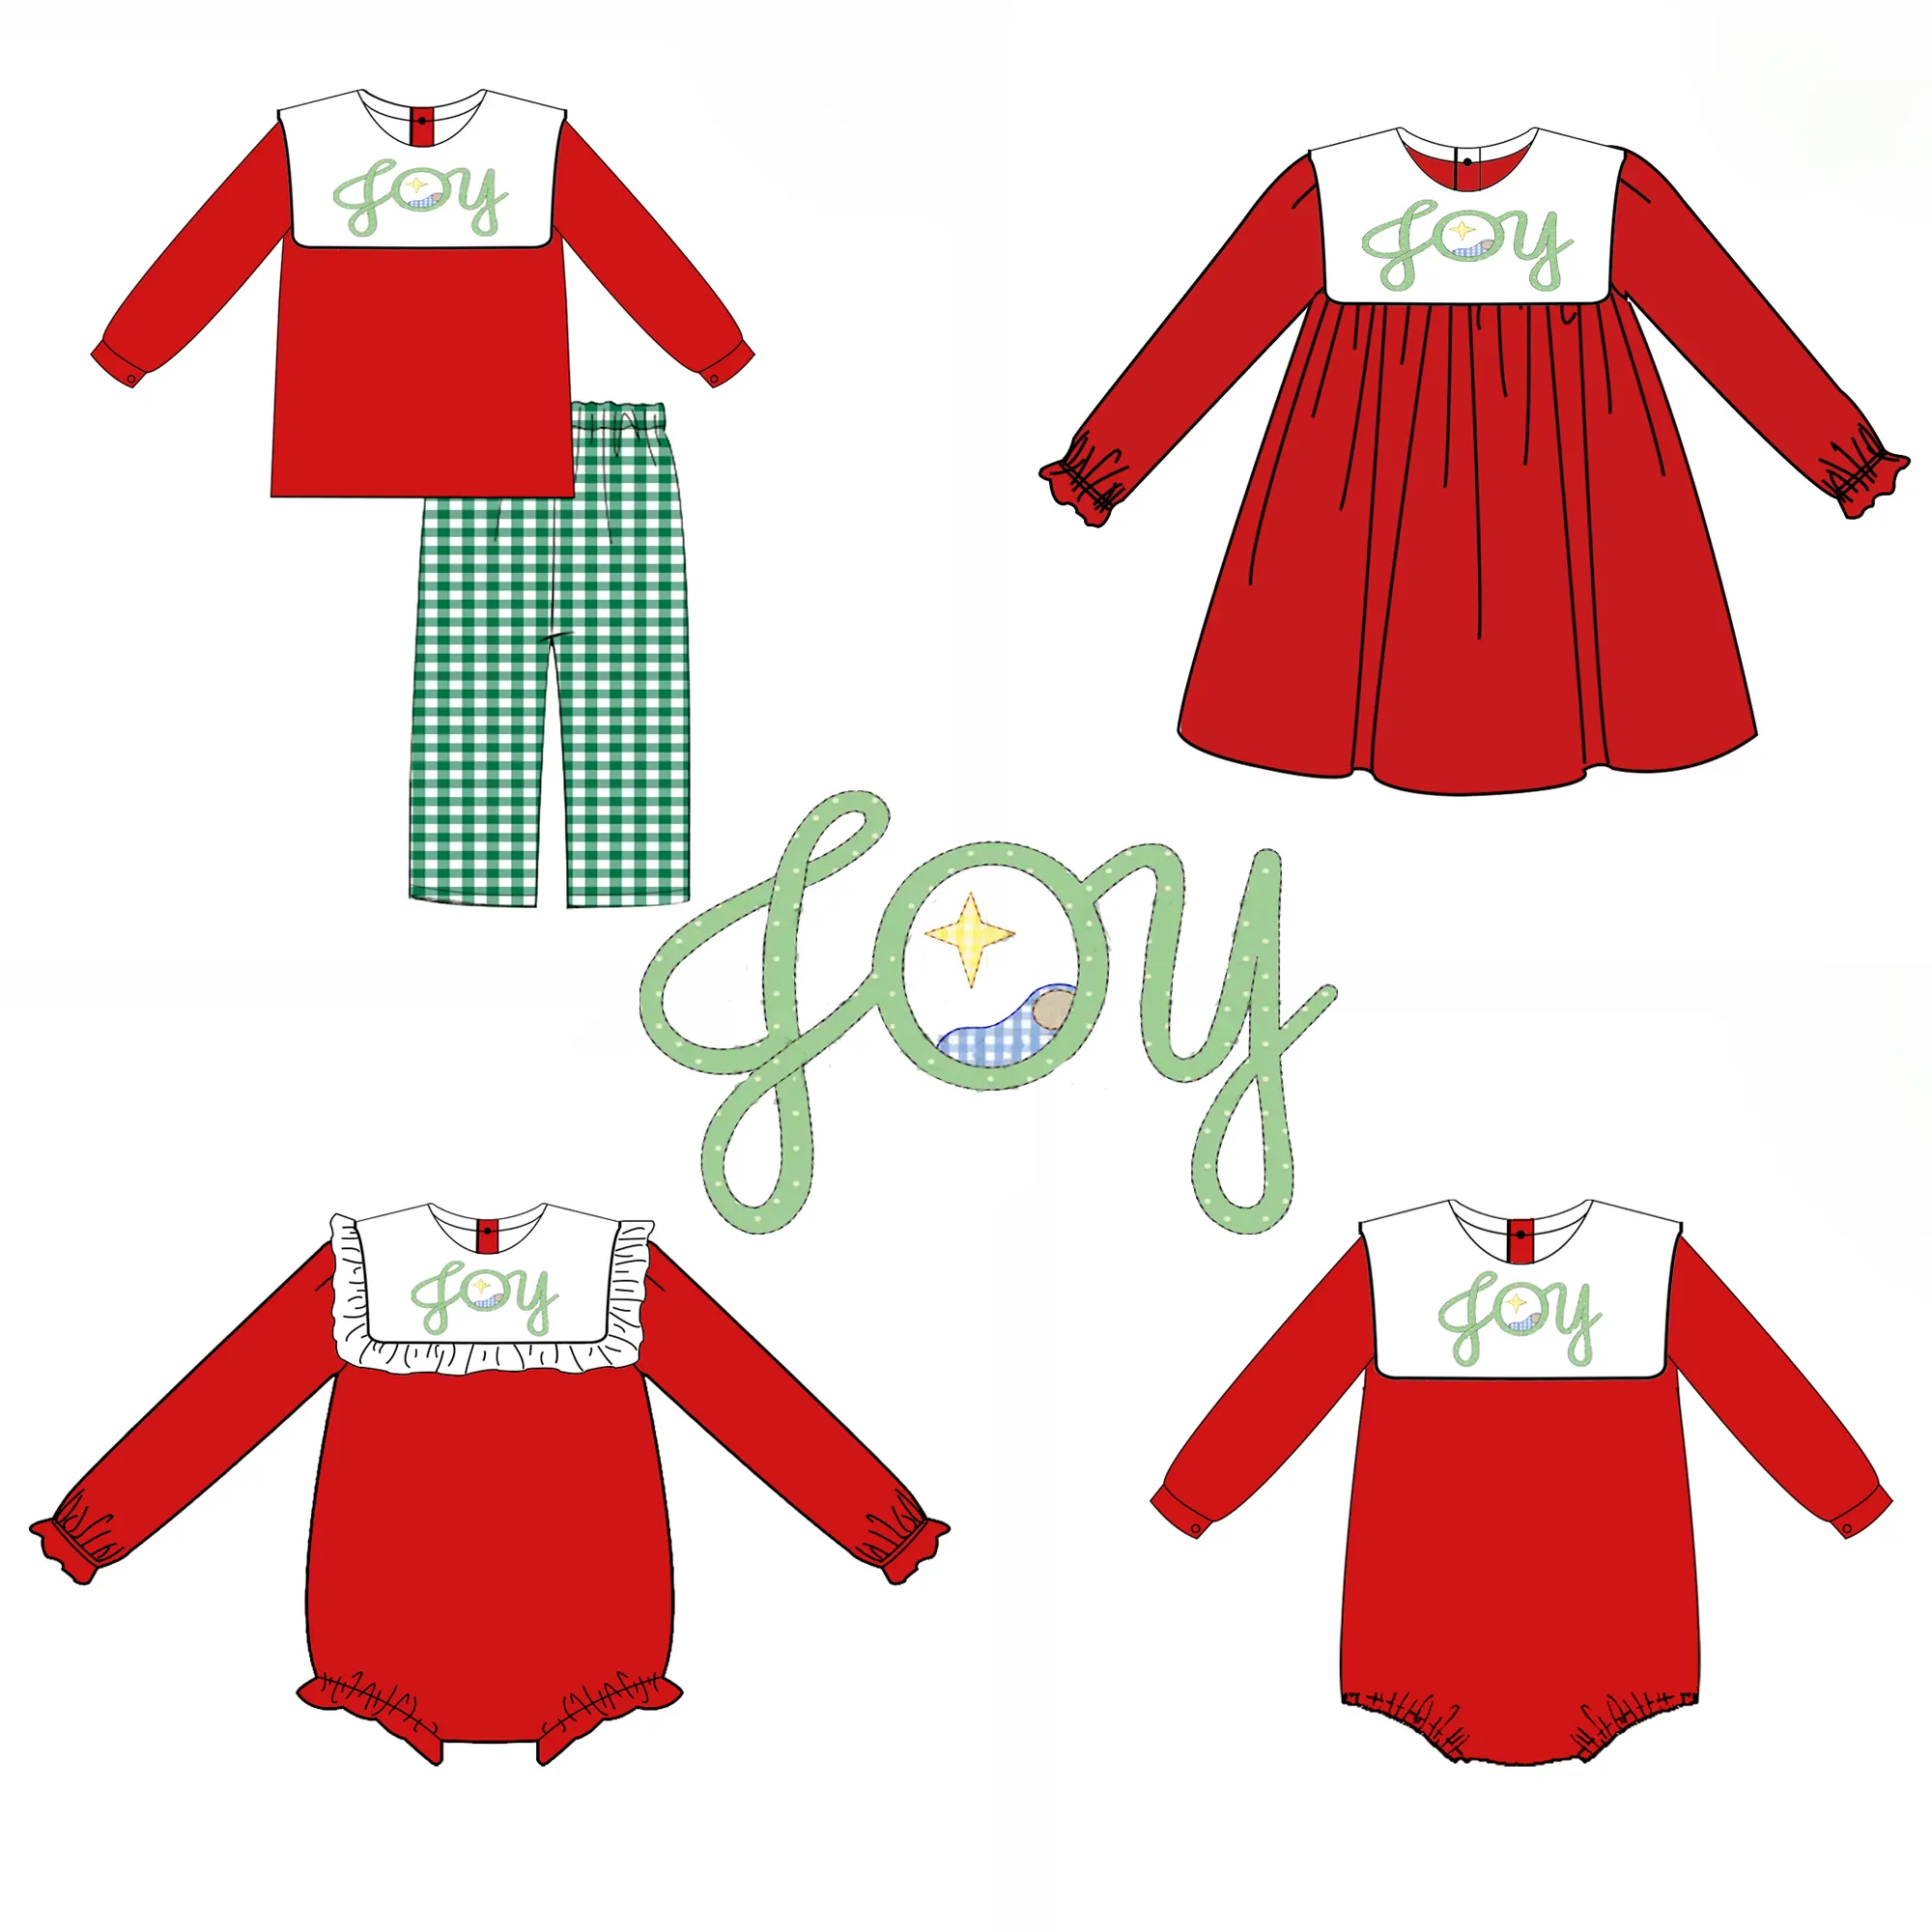 ملابس للفتيات الصغيرات من القطن المحبوك بسعر الجملة من تصميم أبليك عيد الميلاد المحبوك مناسب للفتيات الصغيرات للشتاء